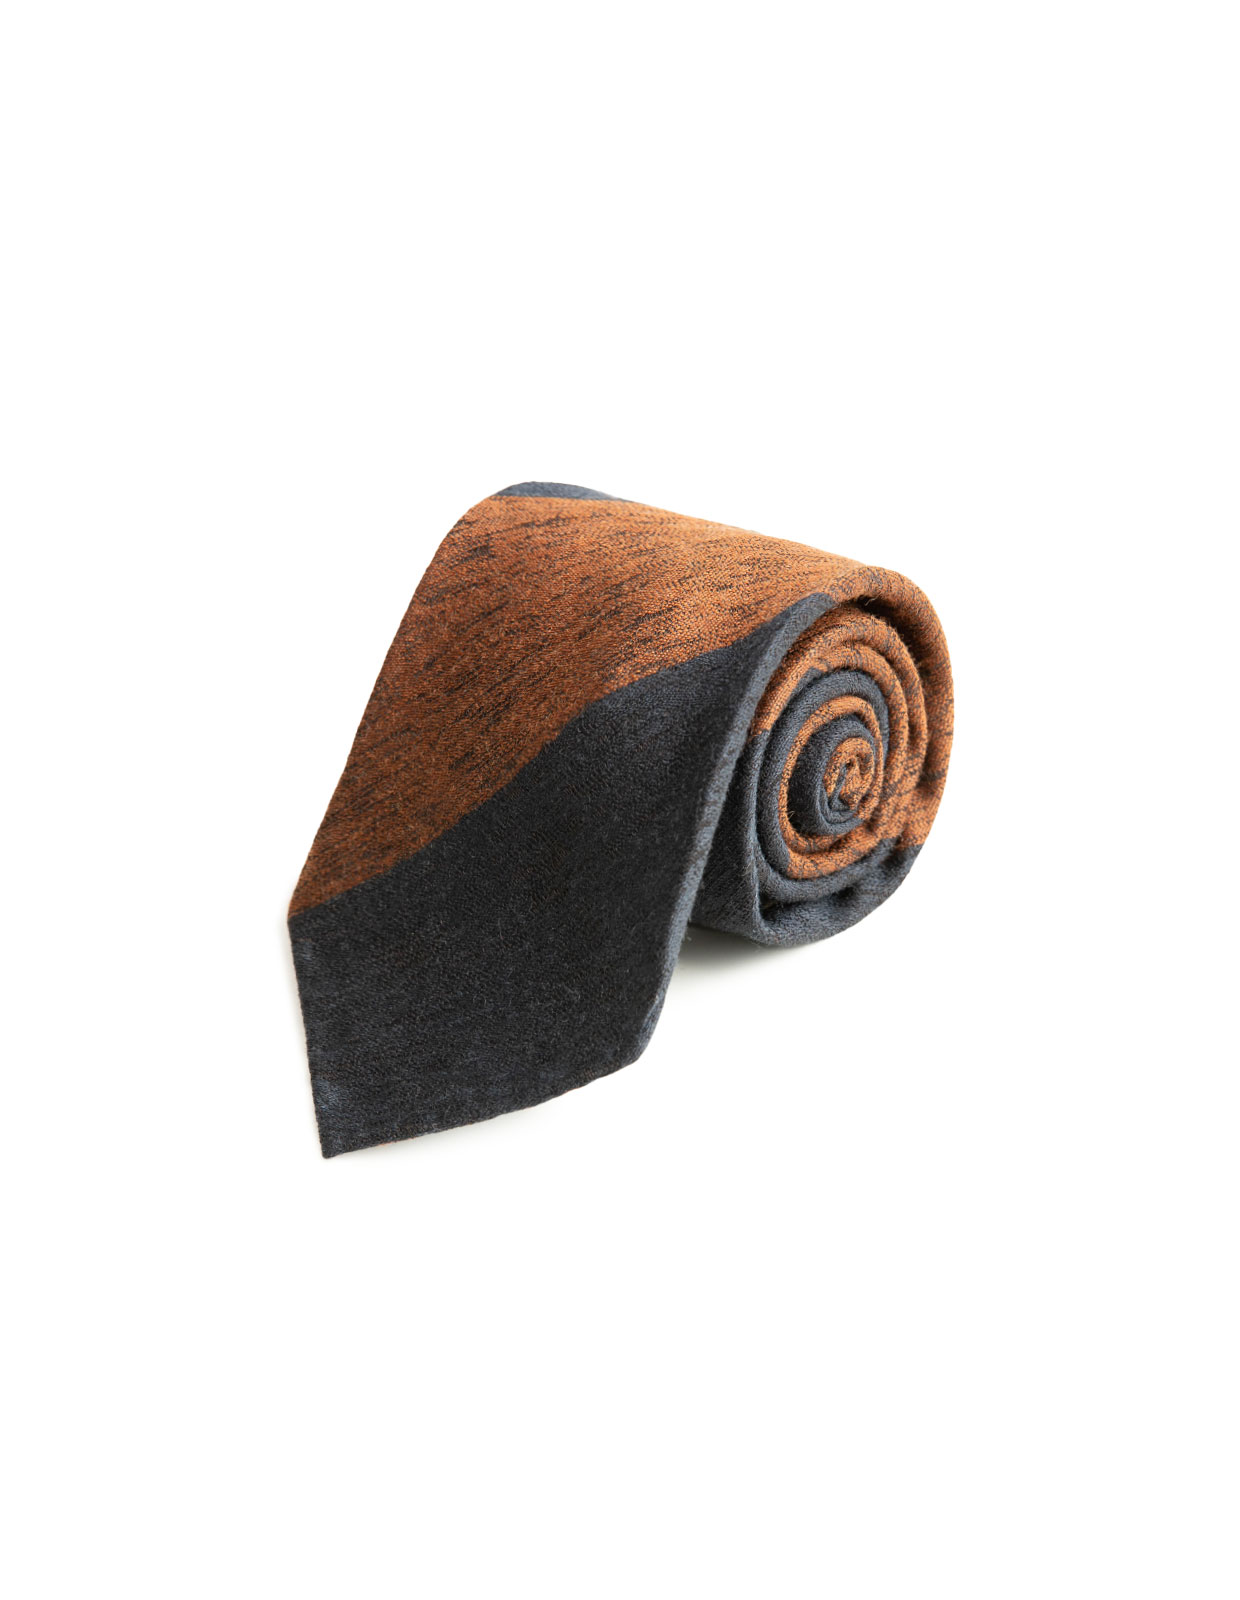 Untipped Wool & Silk Tie Brick/Navy Block Str